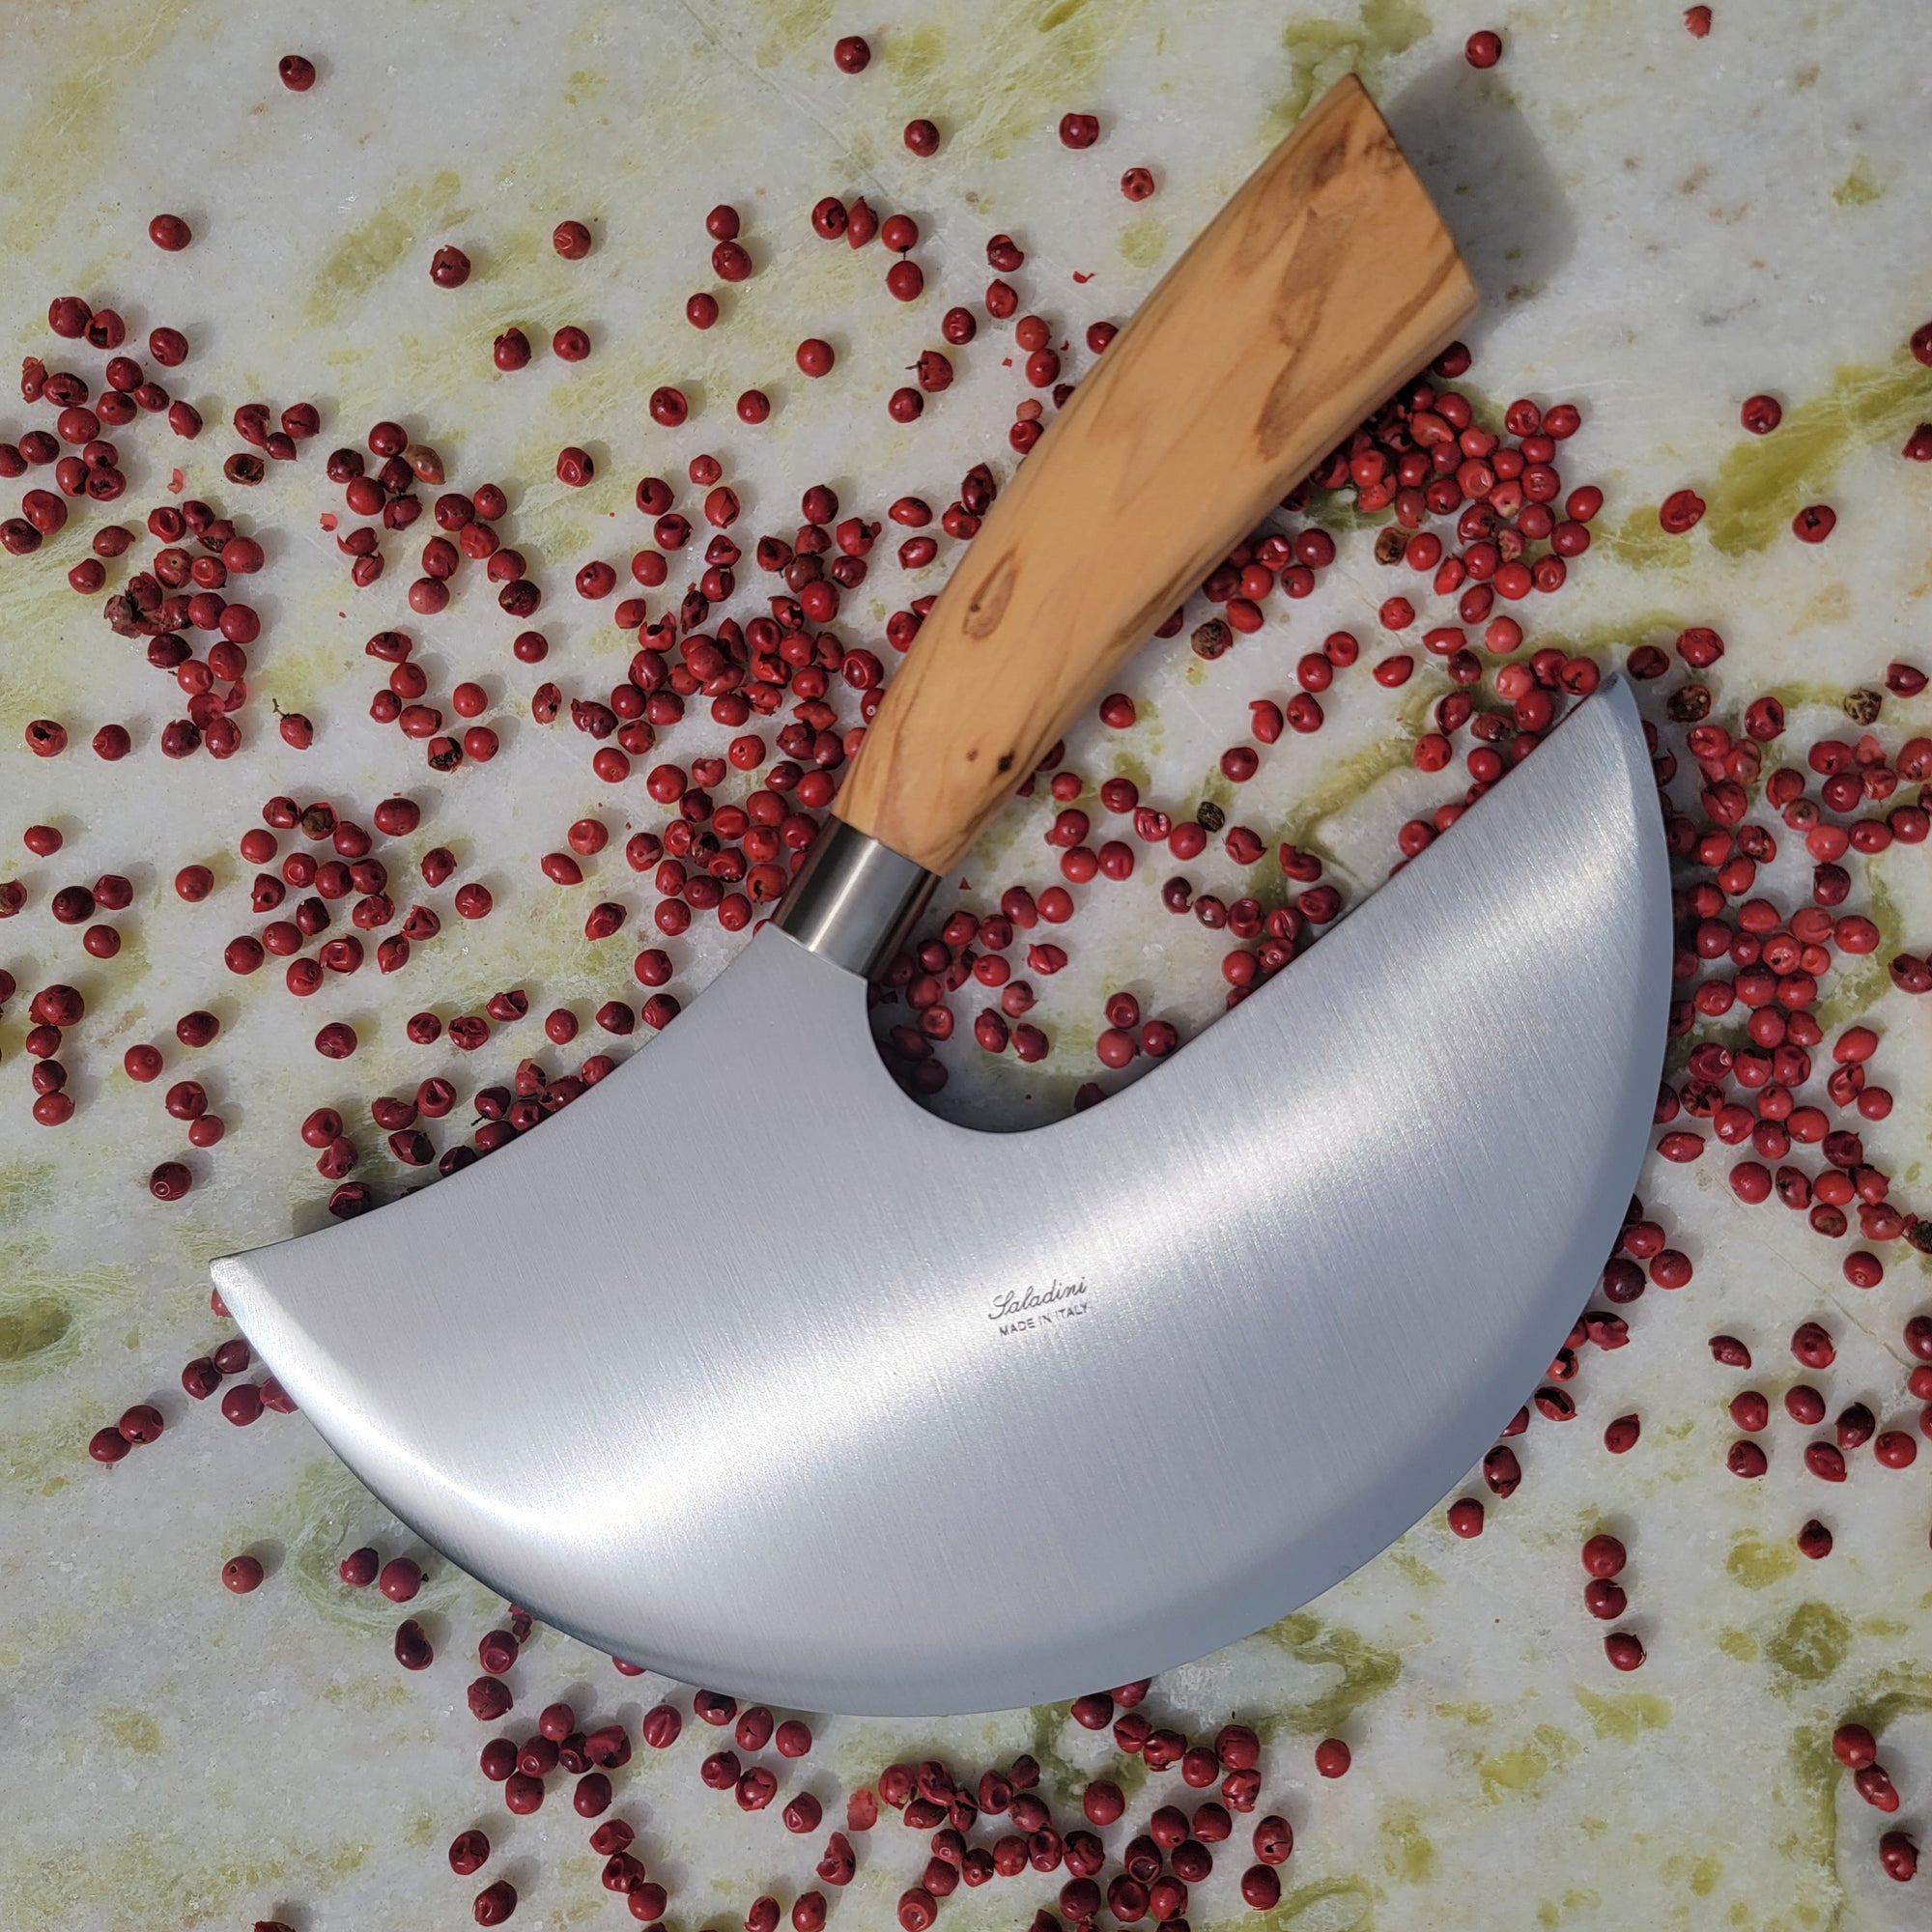 Sellaio Knife